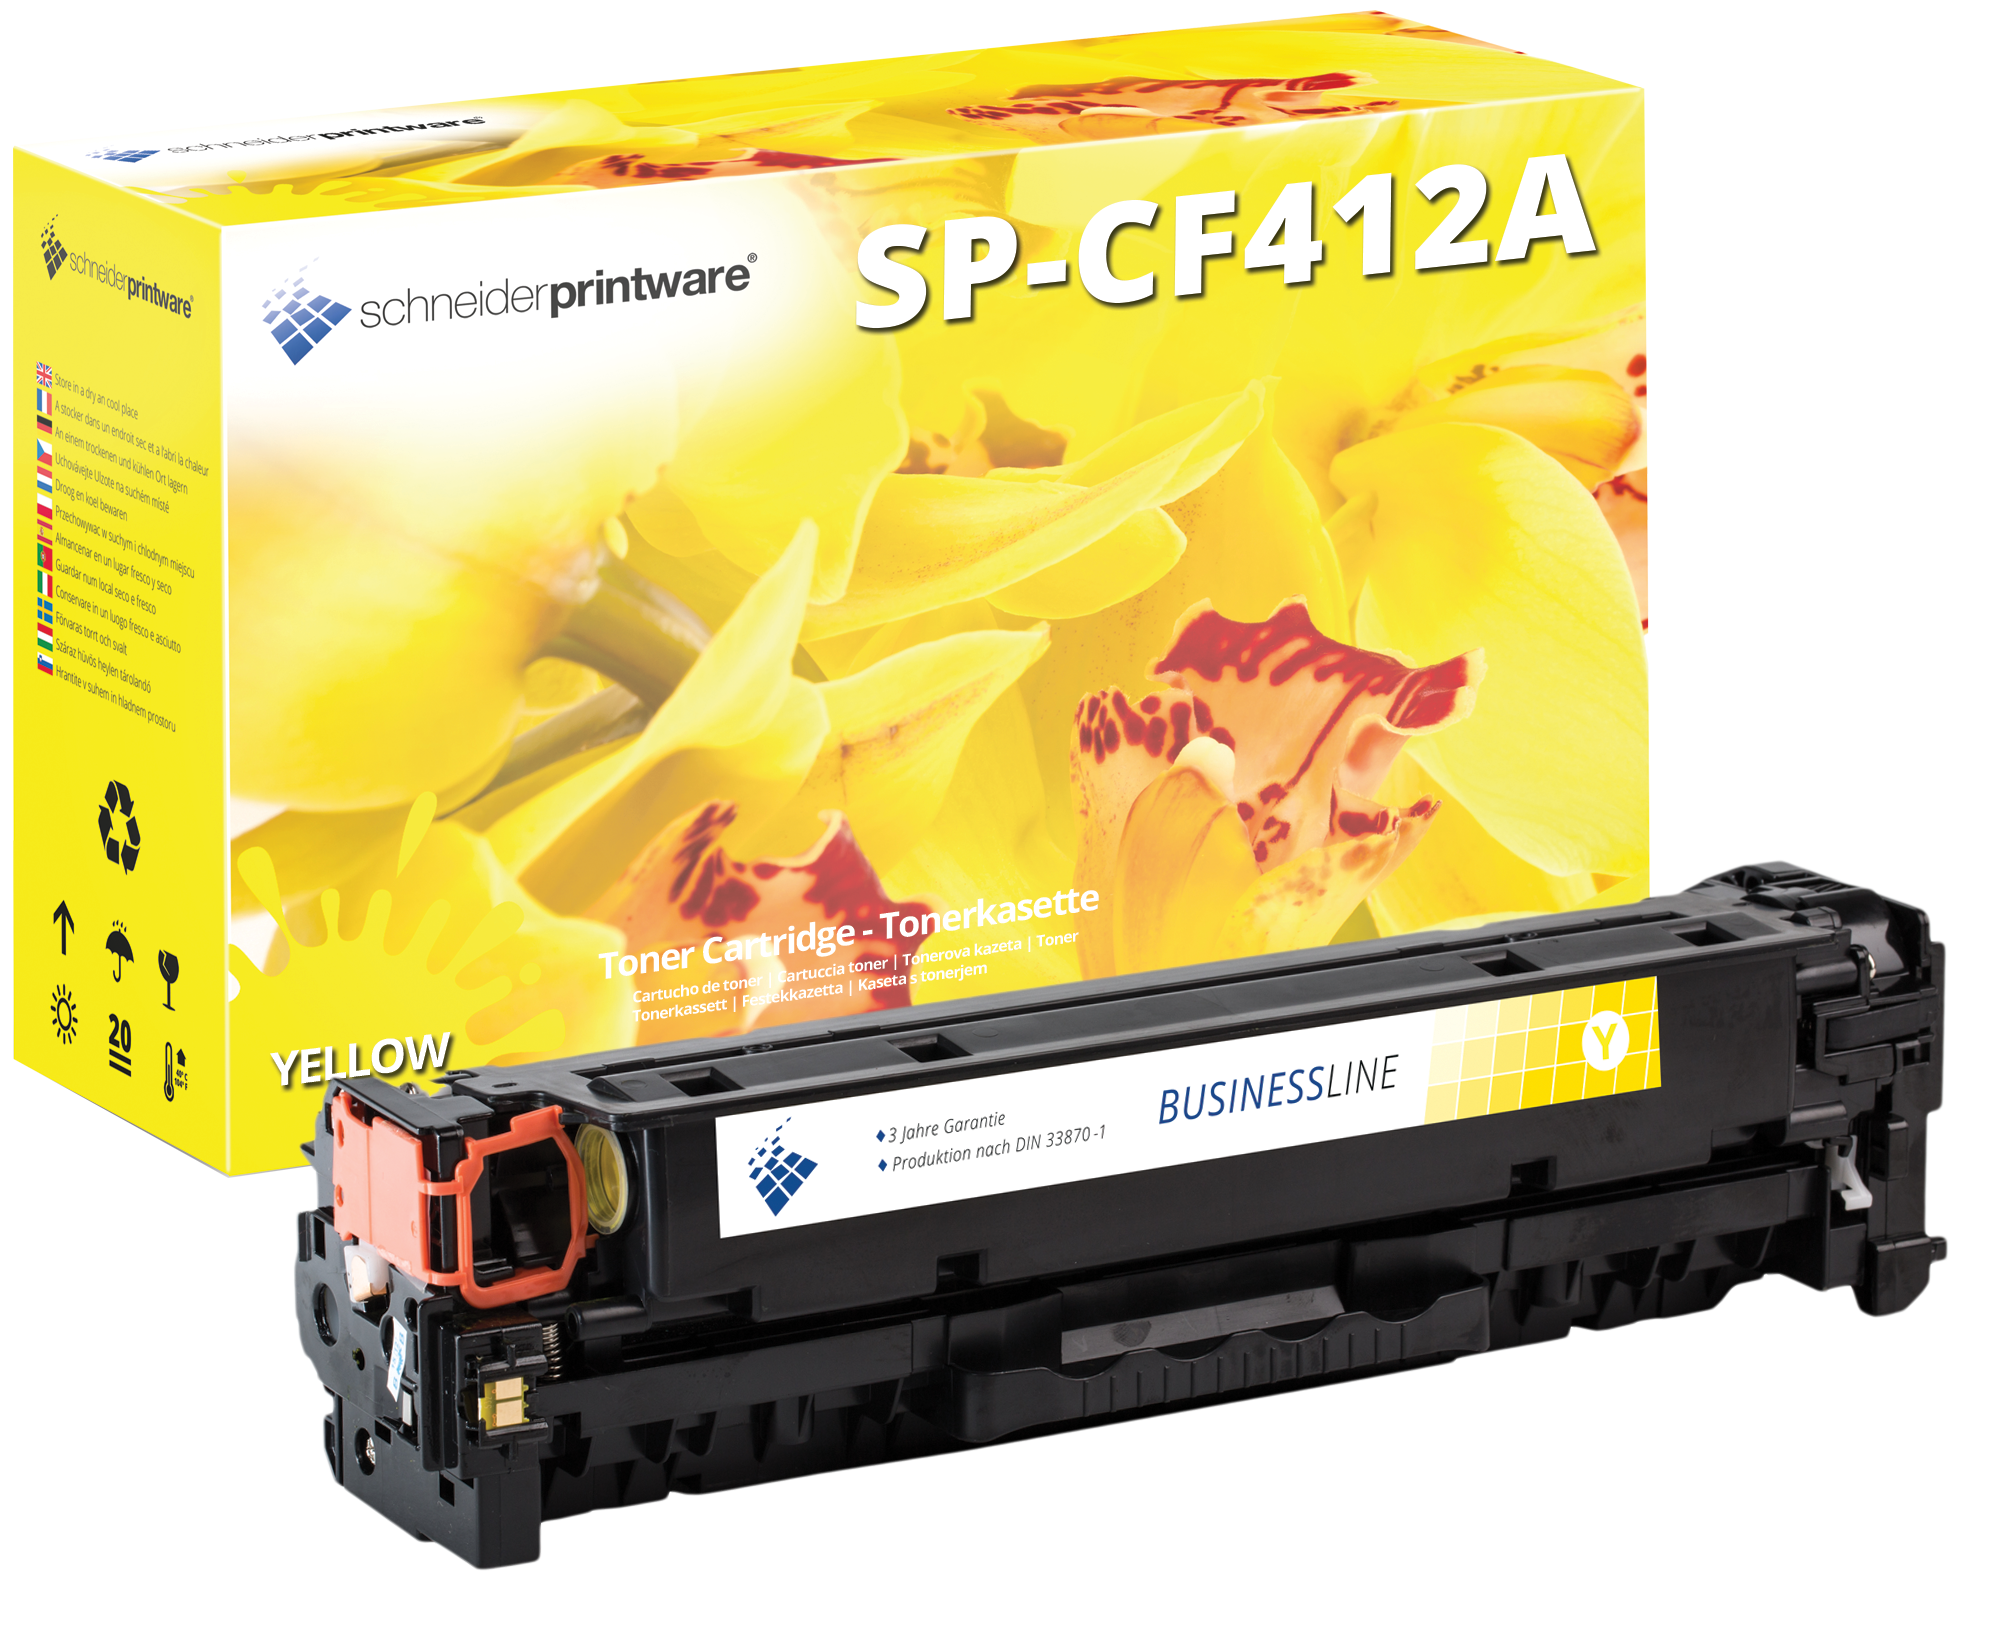 Schneiderprintware Toner 30% mehr Leistung kompatibel zu HP CF412A Yellow